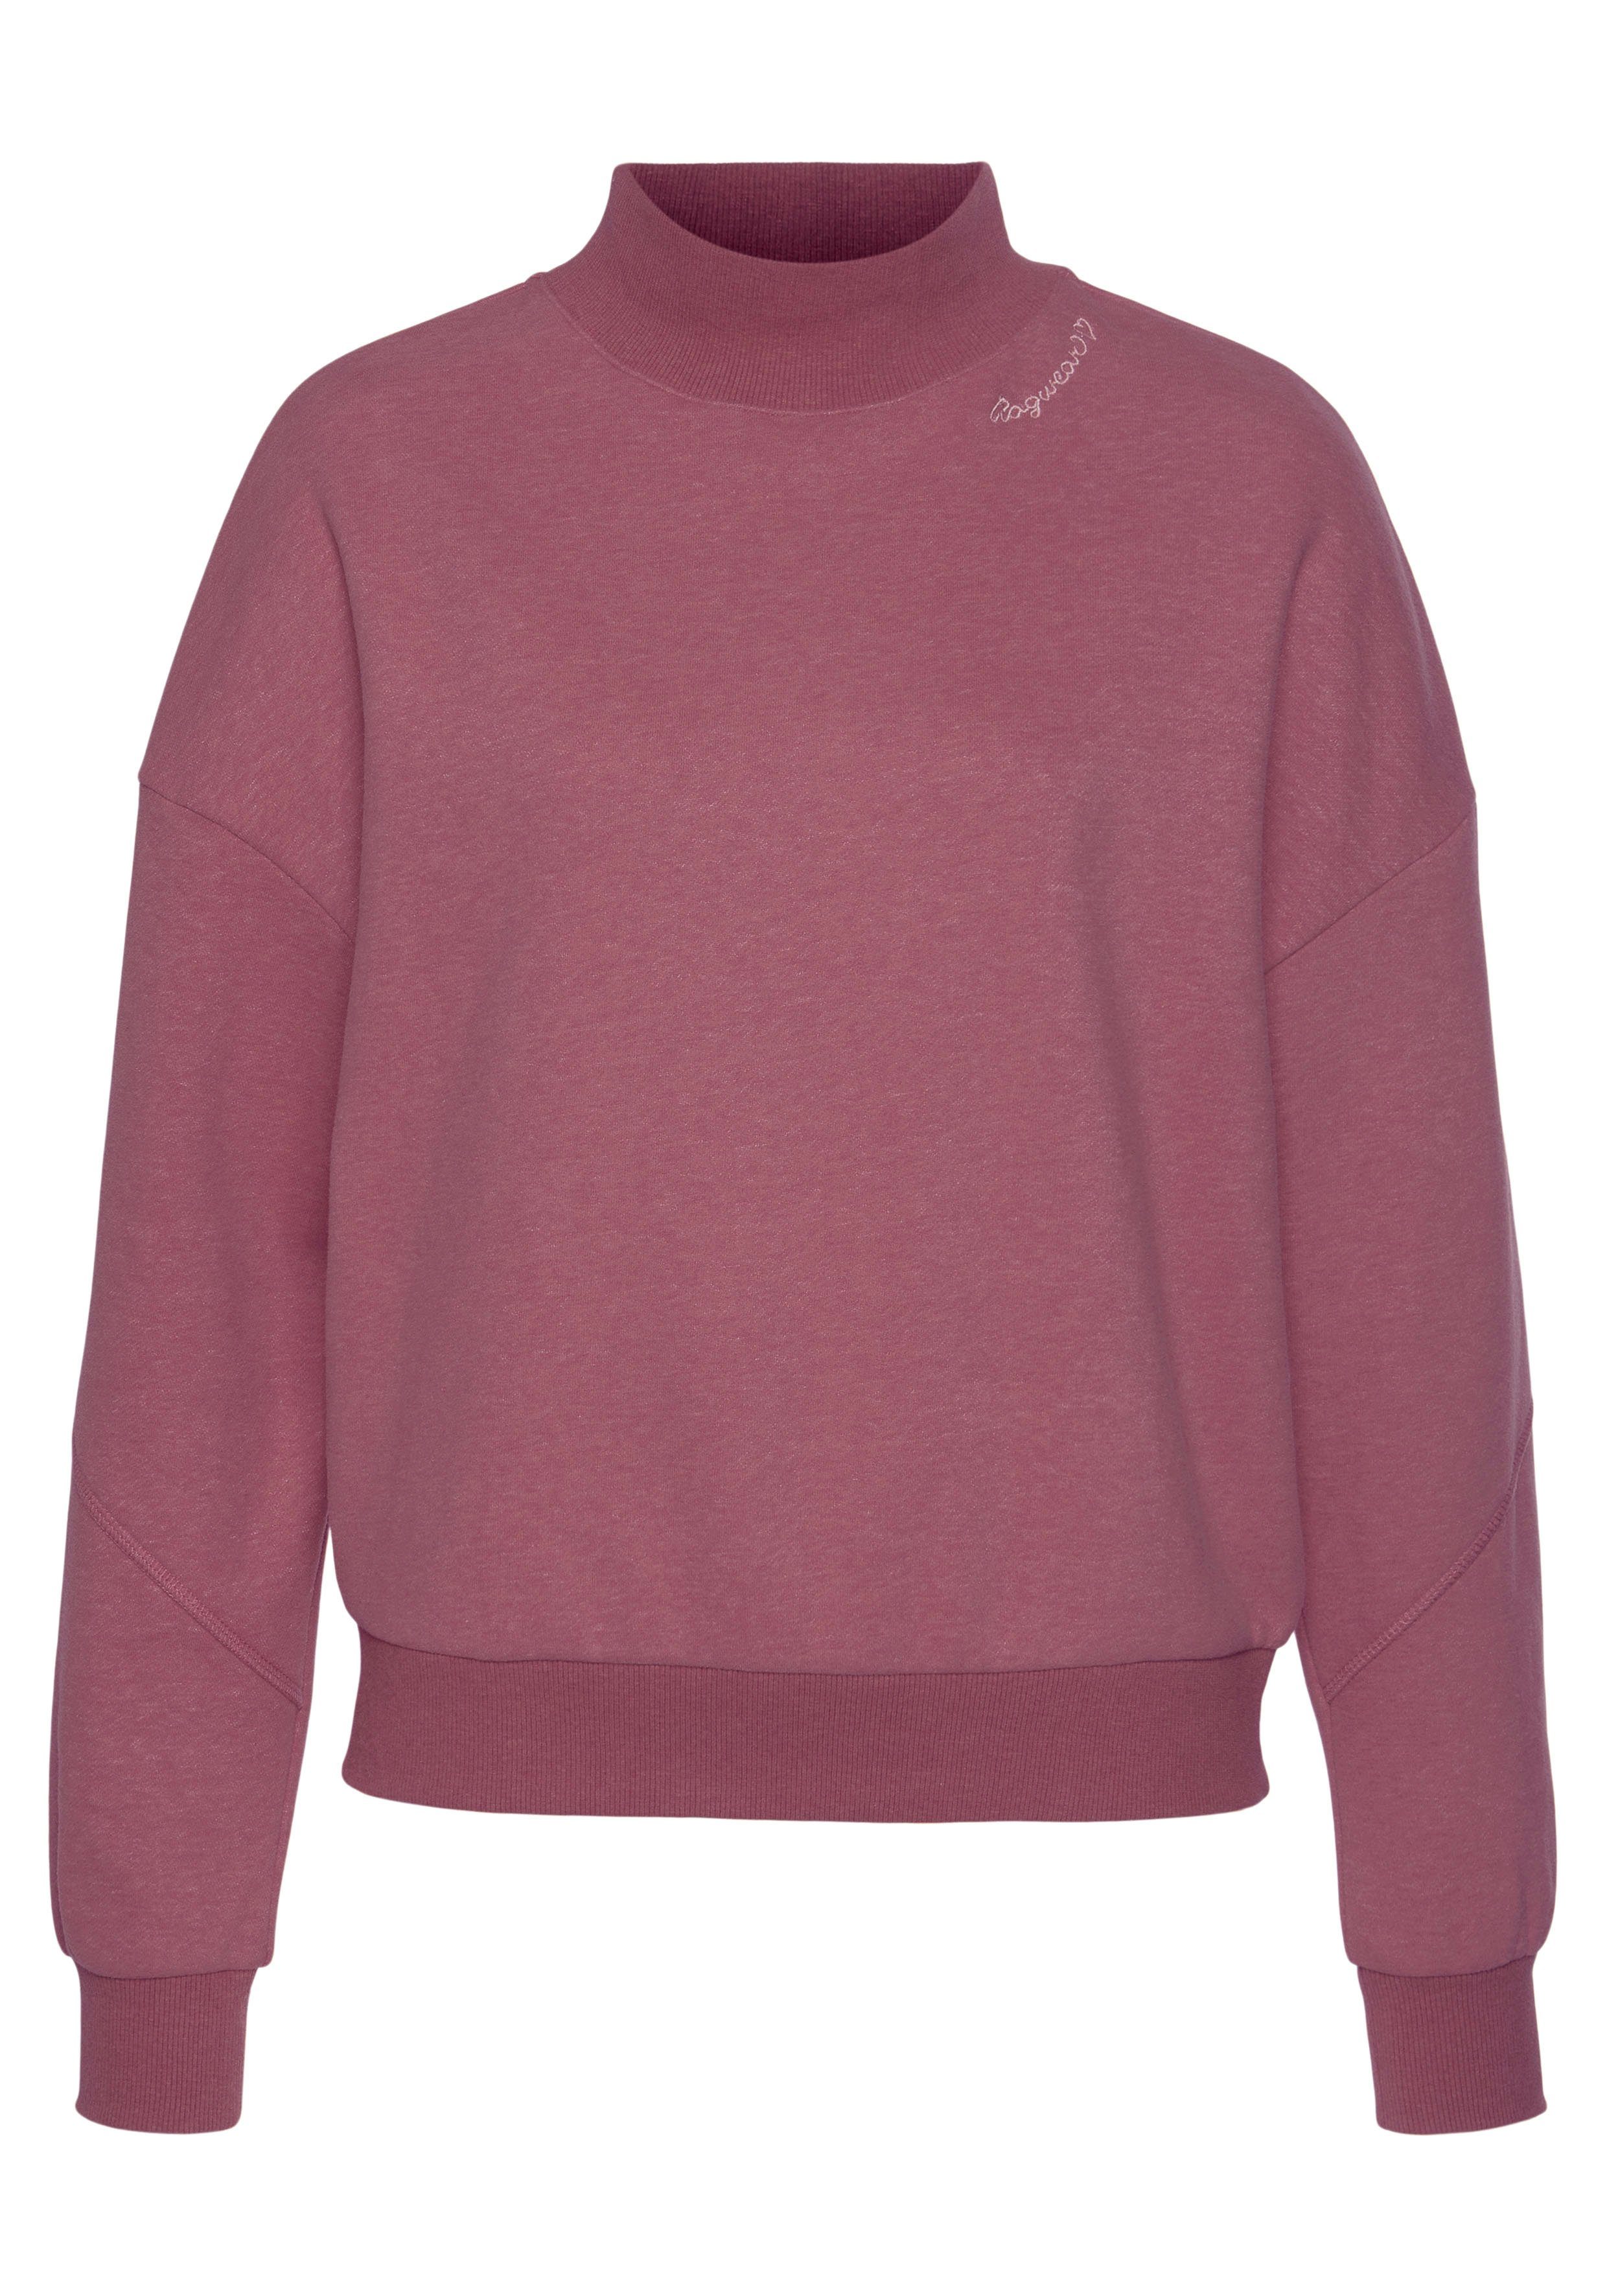 Ragwear Sweater KAILA SWEAT, Vegan, von PETA verifiziertes Sweatshirt  